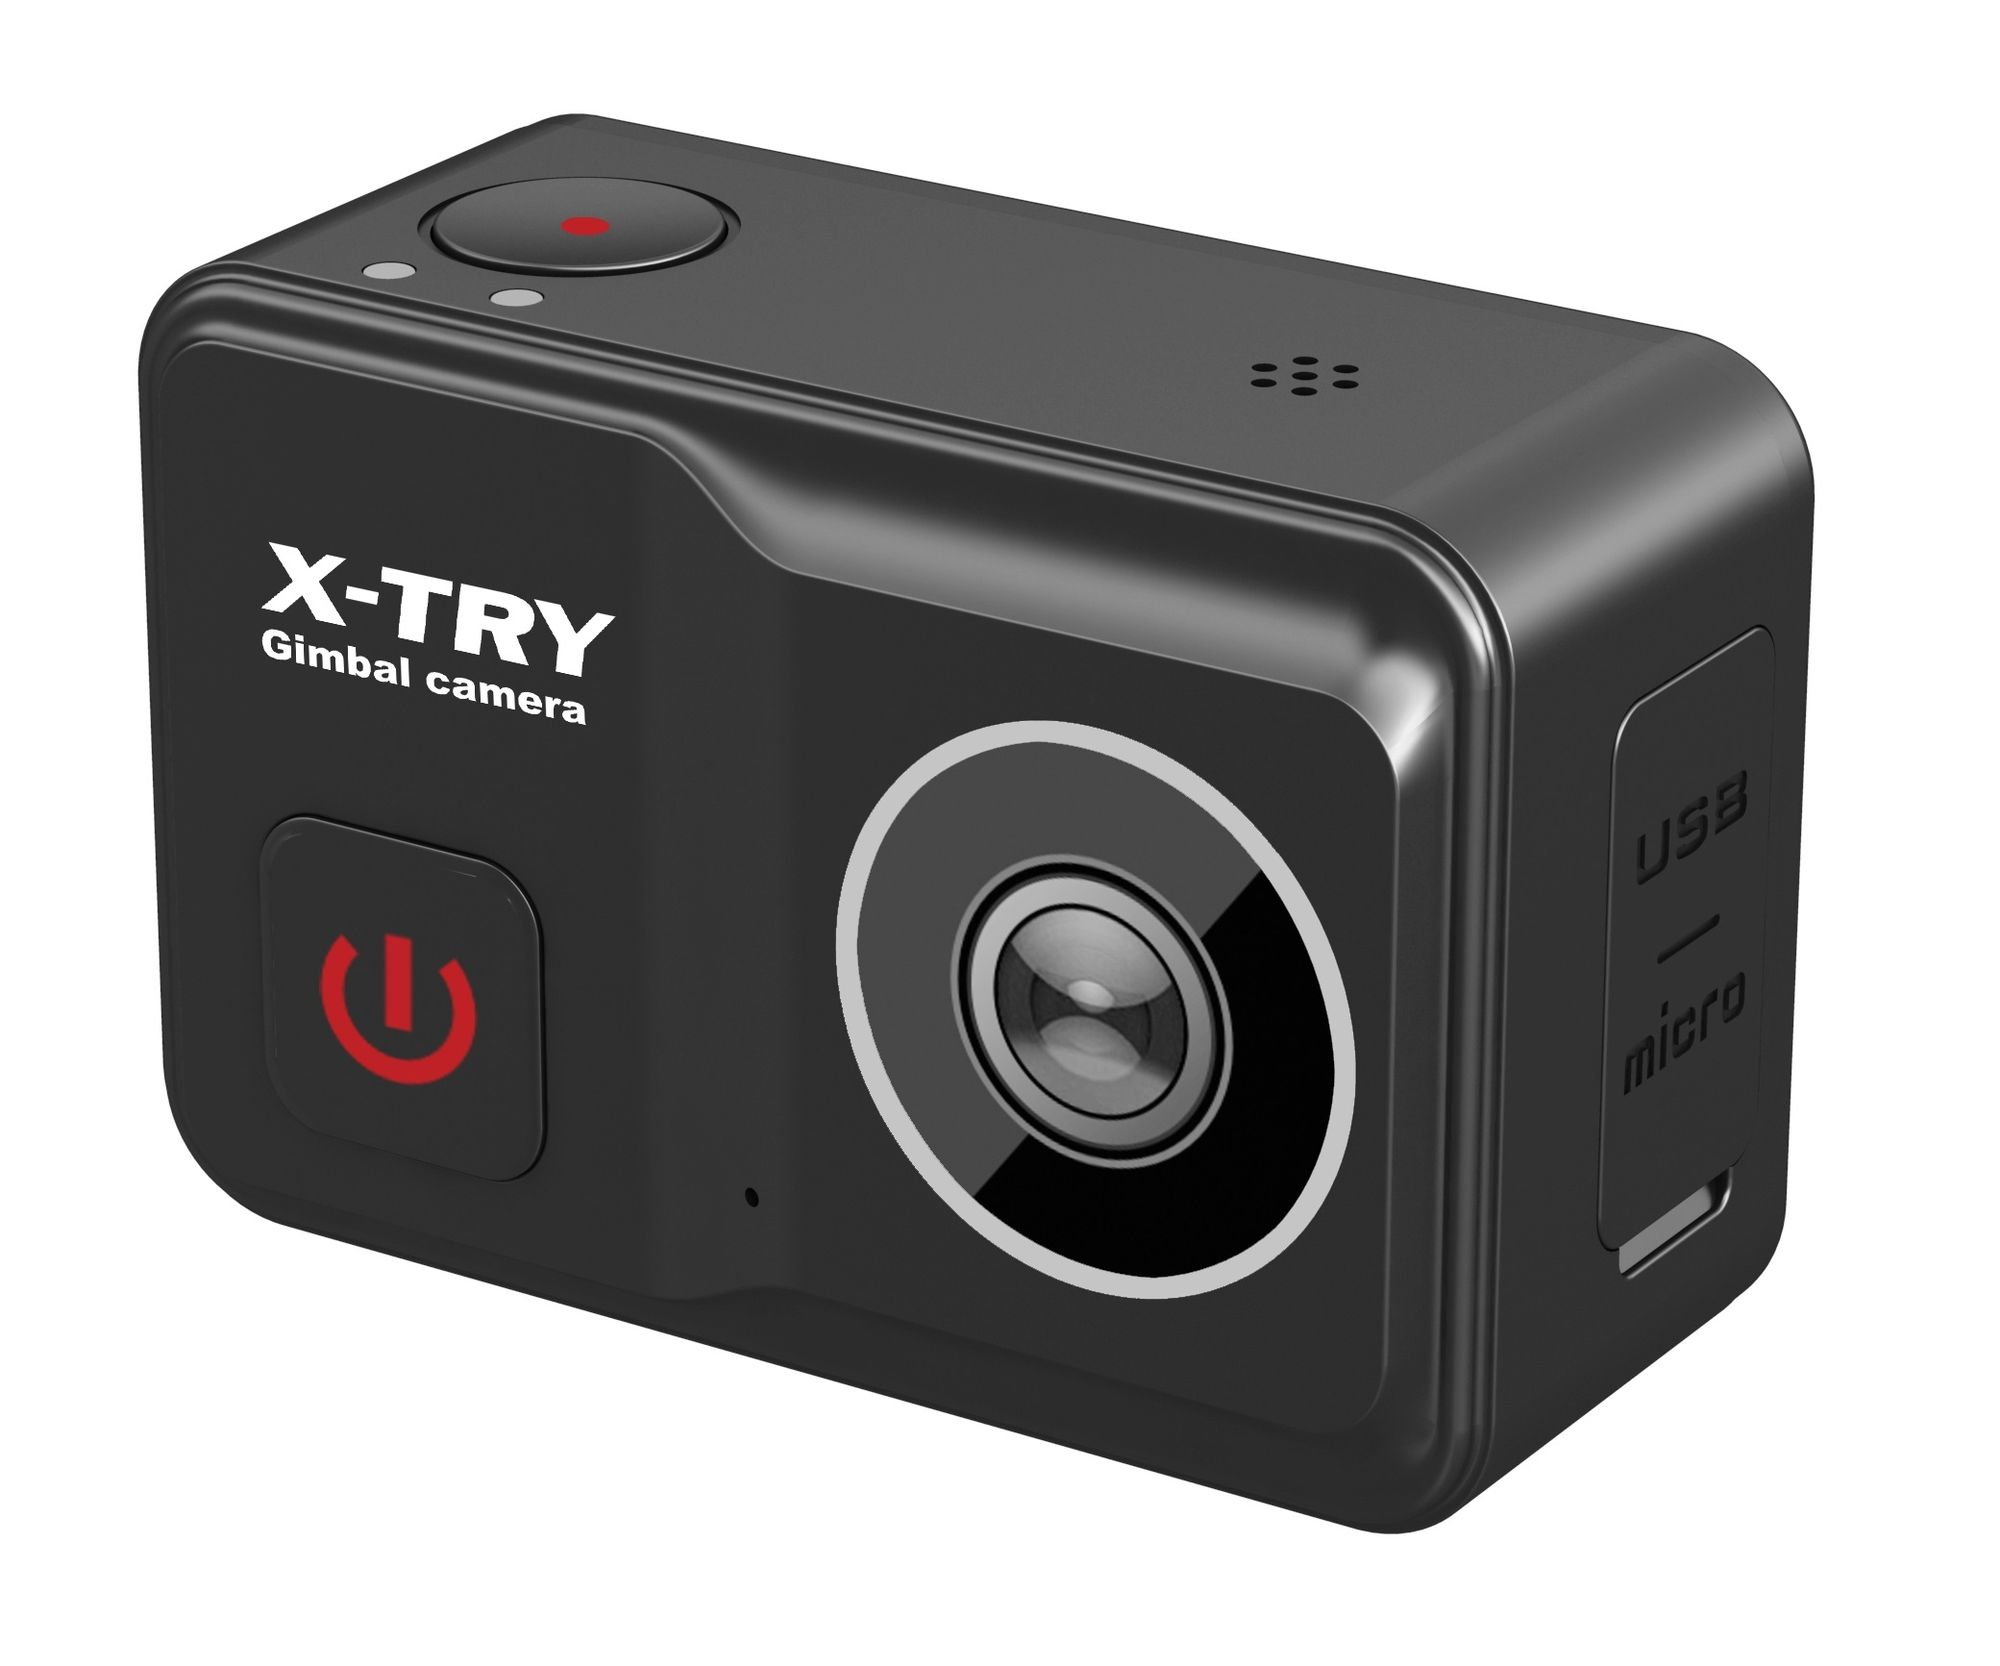 Экшн камера X-Try XTC502 Gimbal Real 4K/60FPS WDR Wi-Fi Power, цвет черный